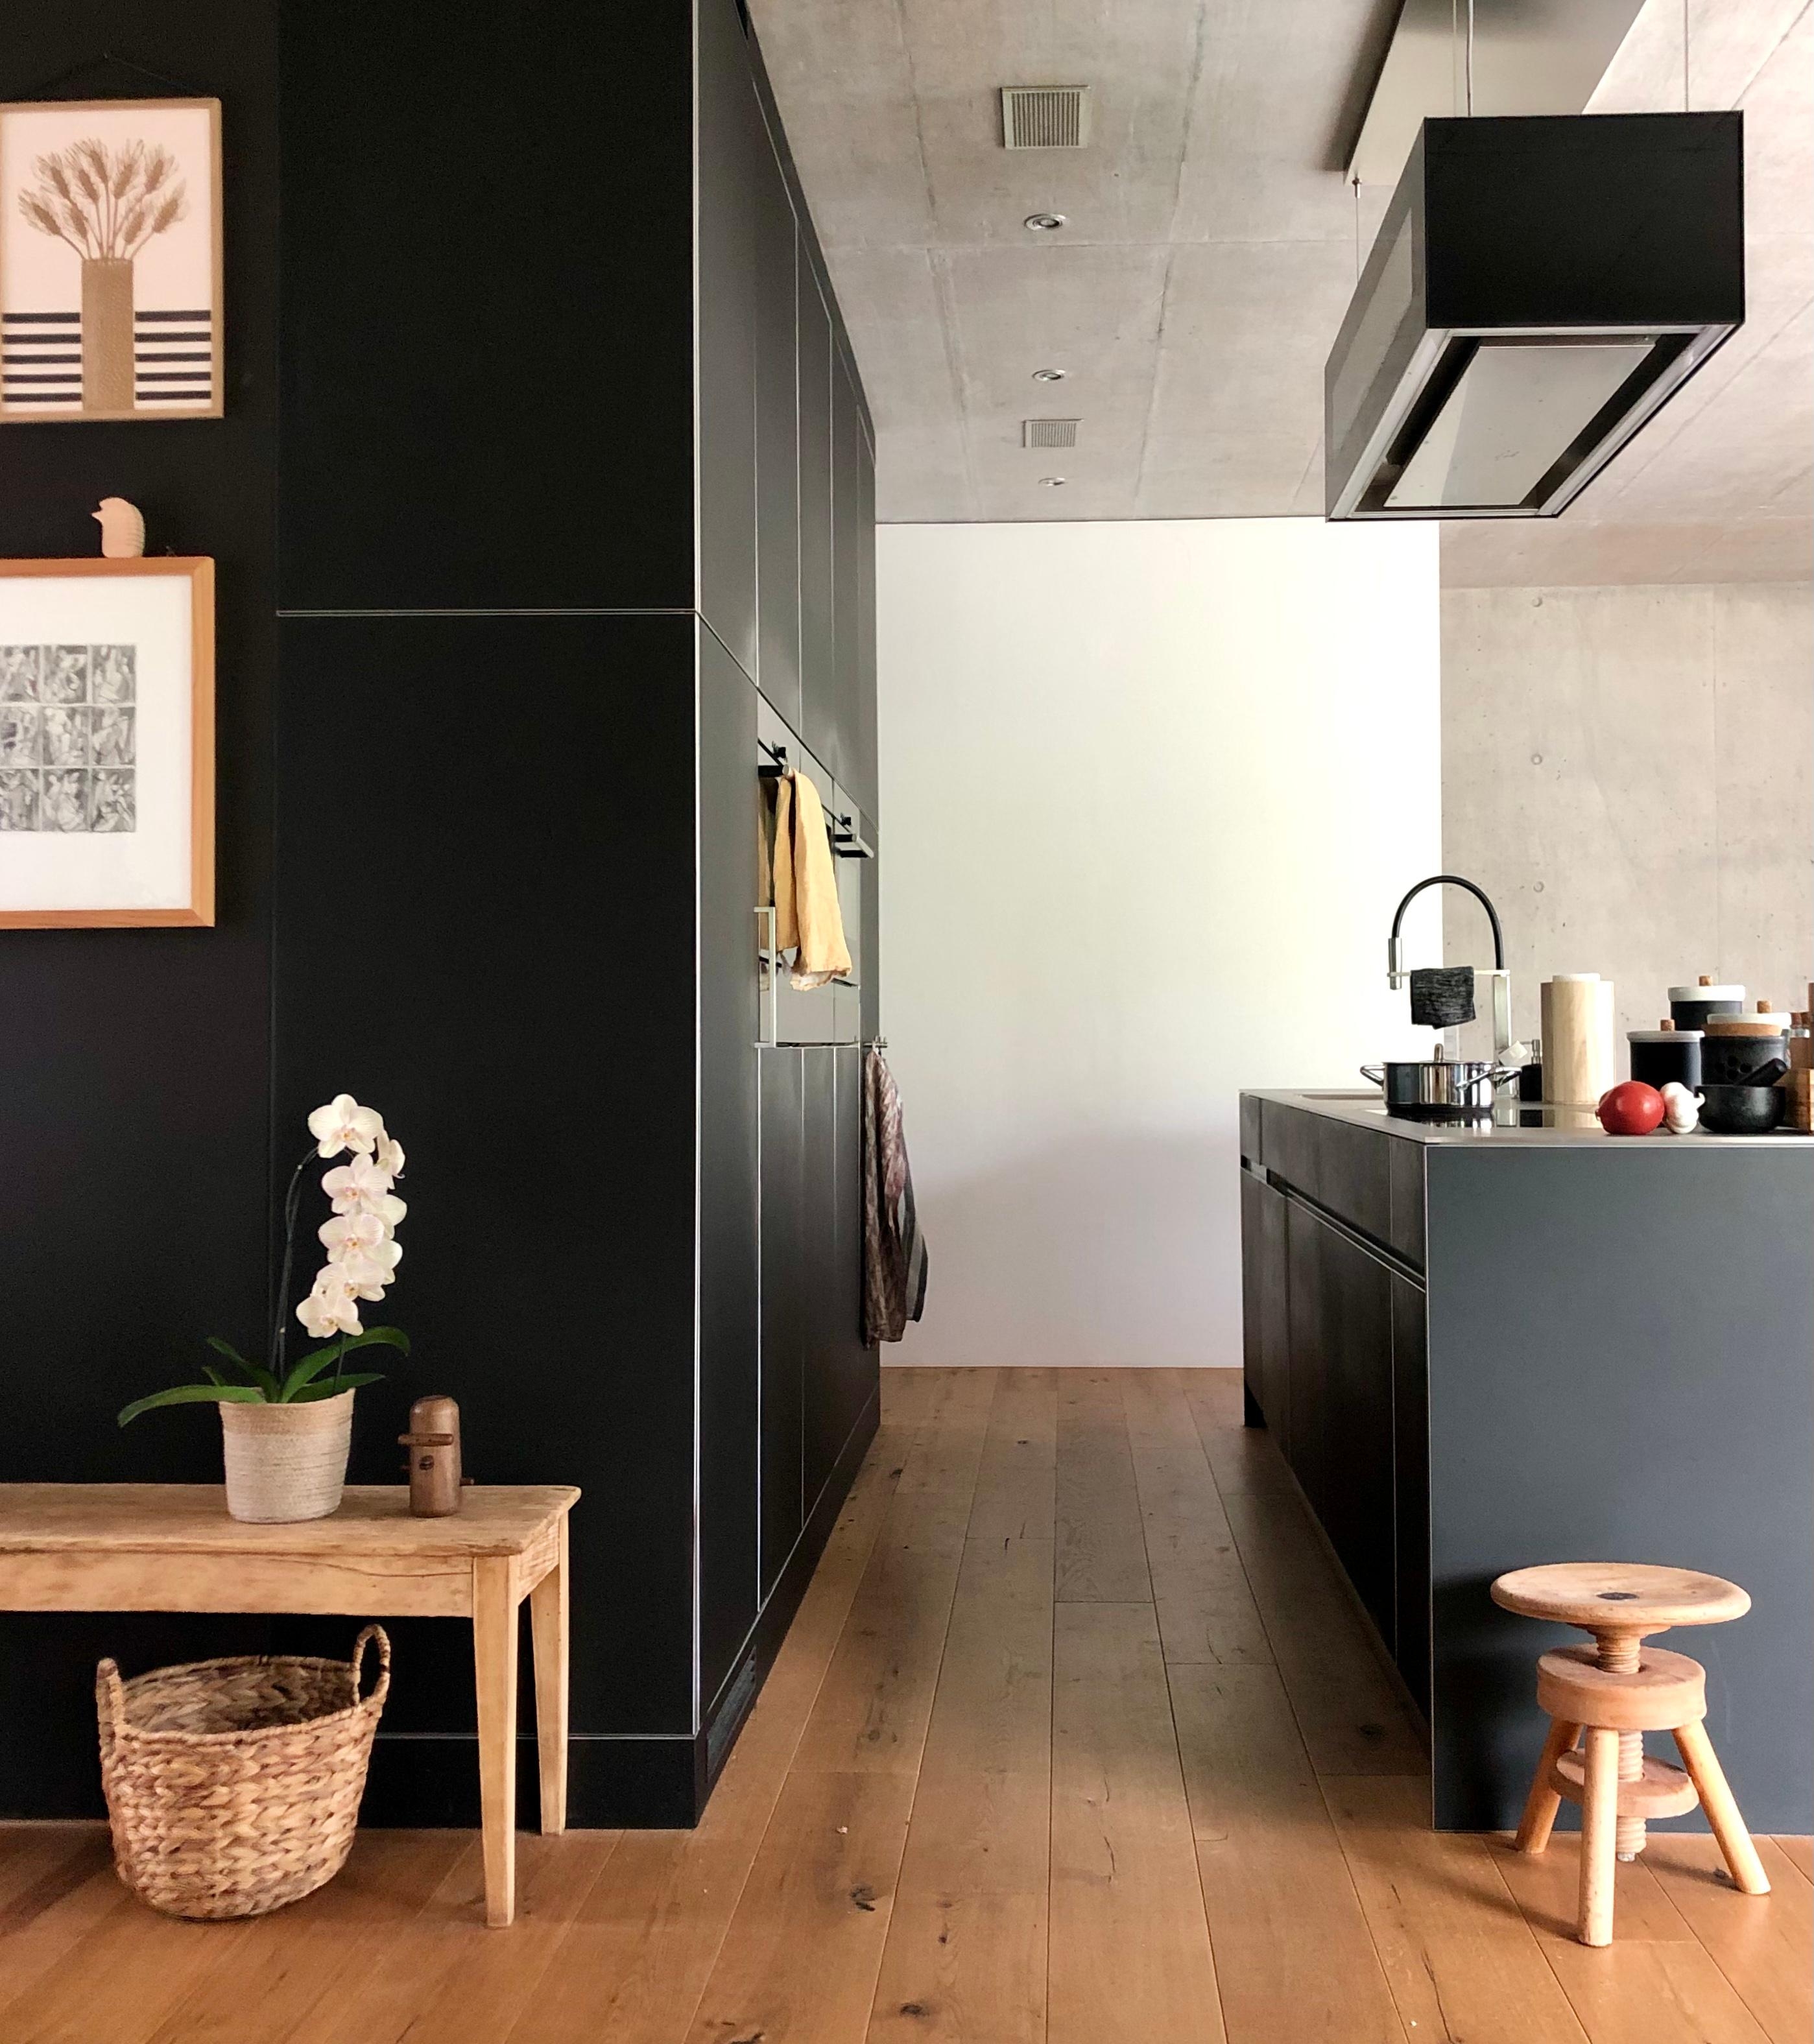 #livingchallenge #küche
Unsere schwarze Küche, kombiniert mit Holz und Beton.